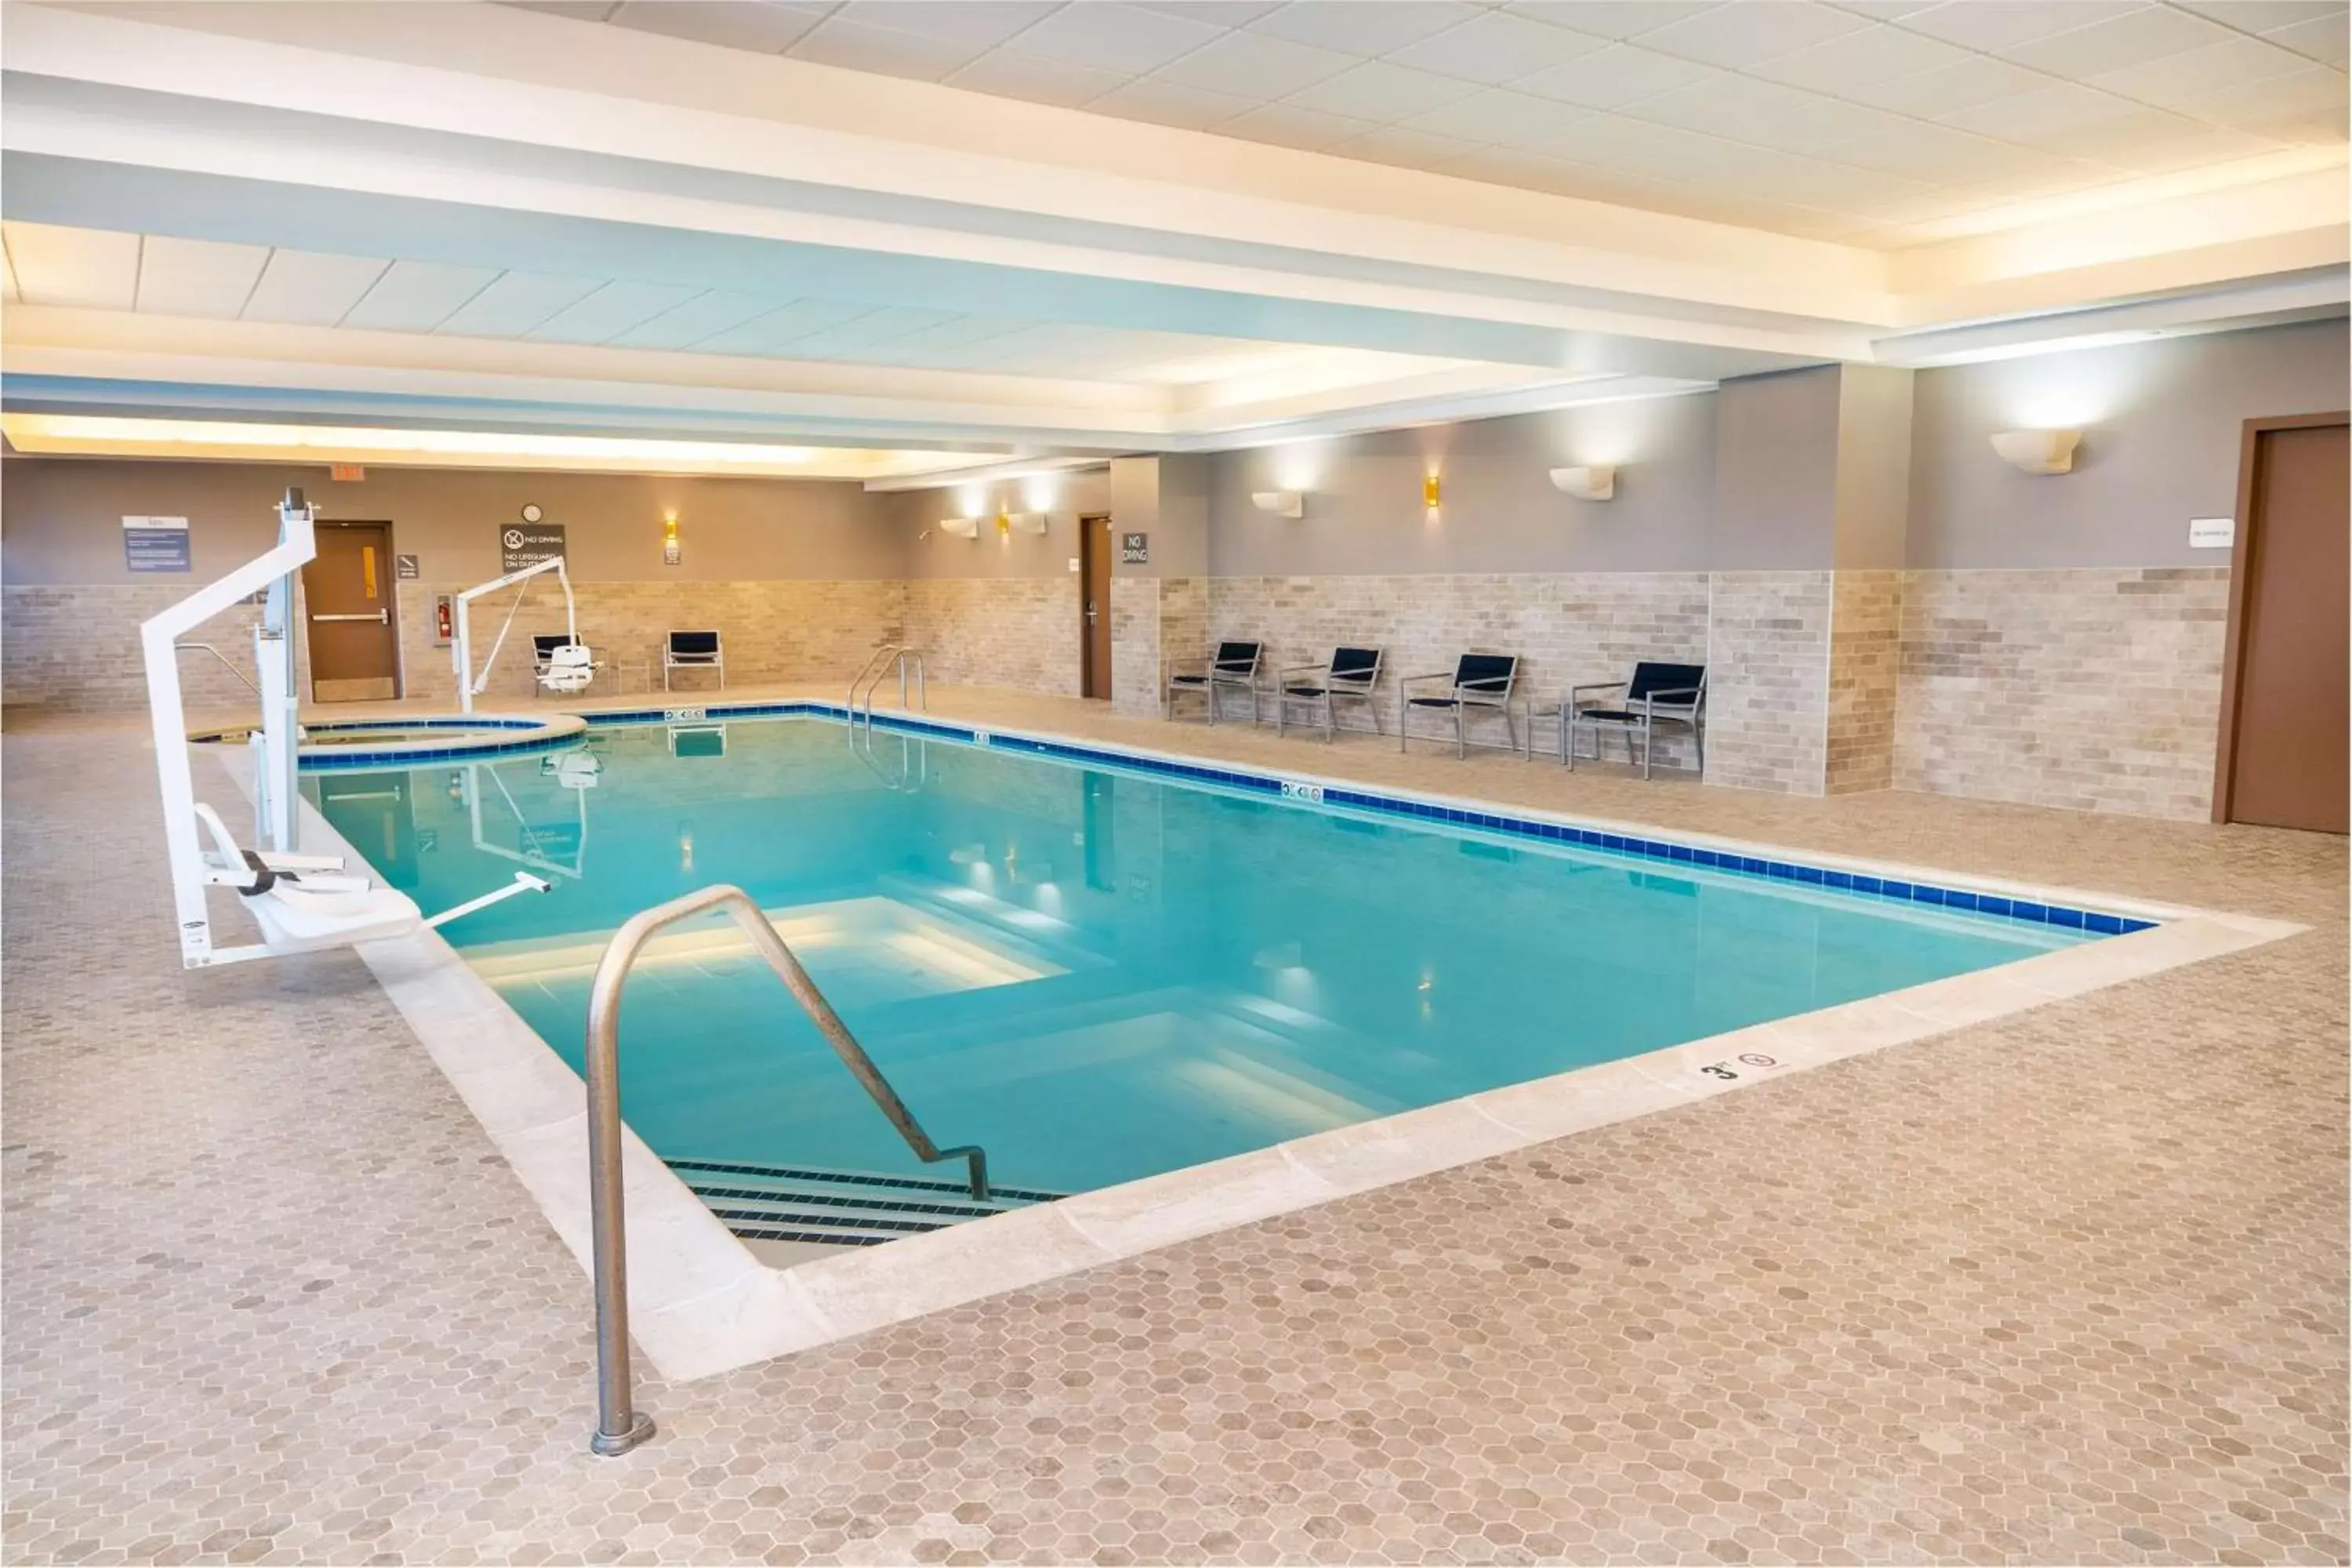 Swimming Pool in Hilton Garden Inn Hanover Arundel Mills, MD